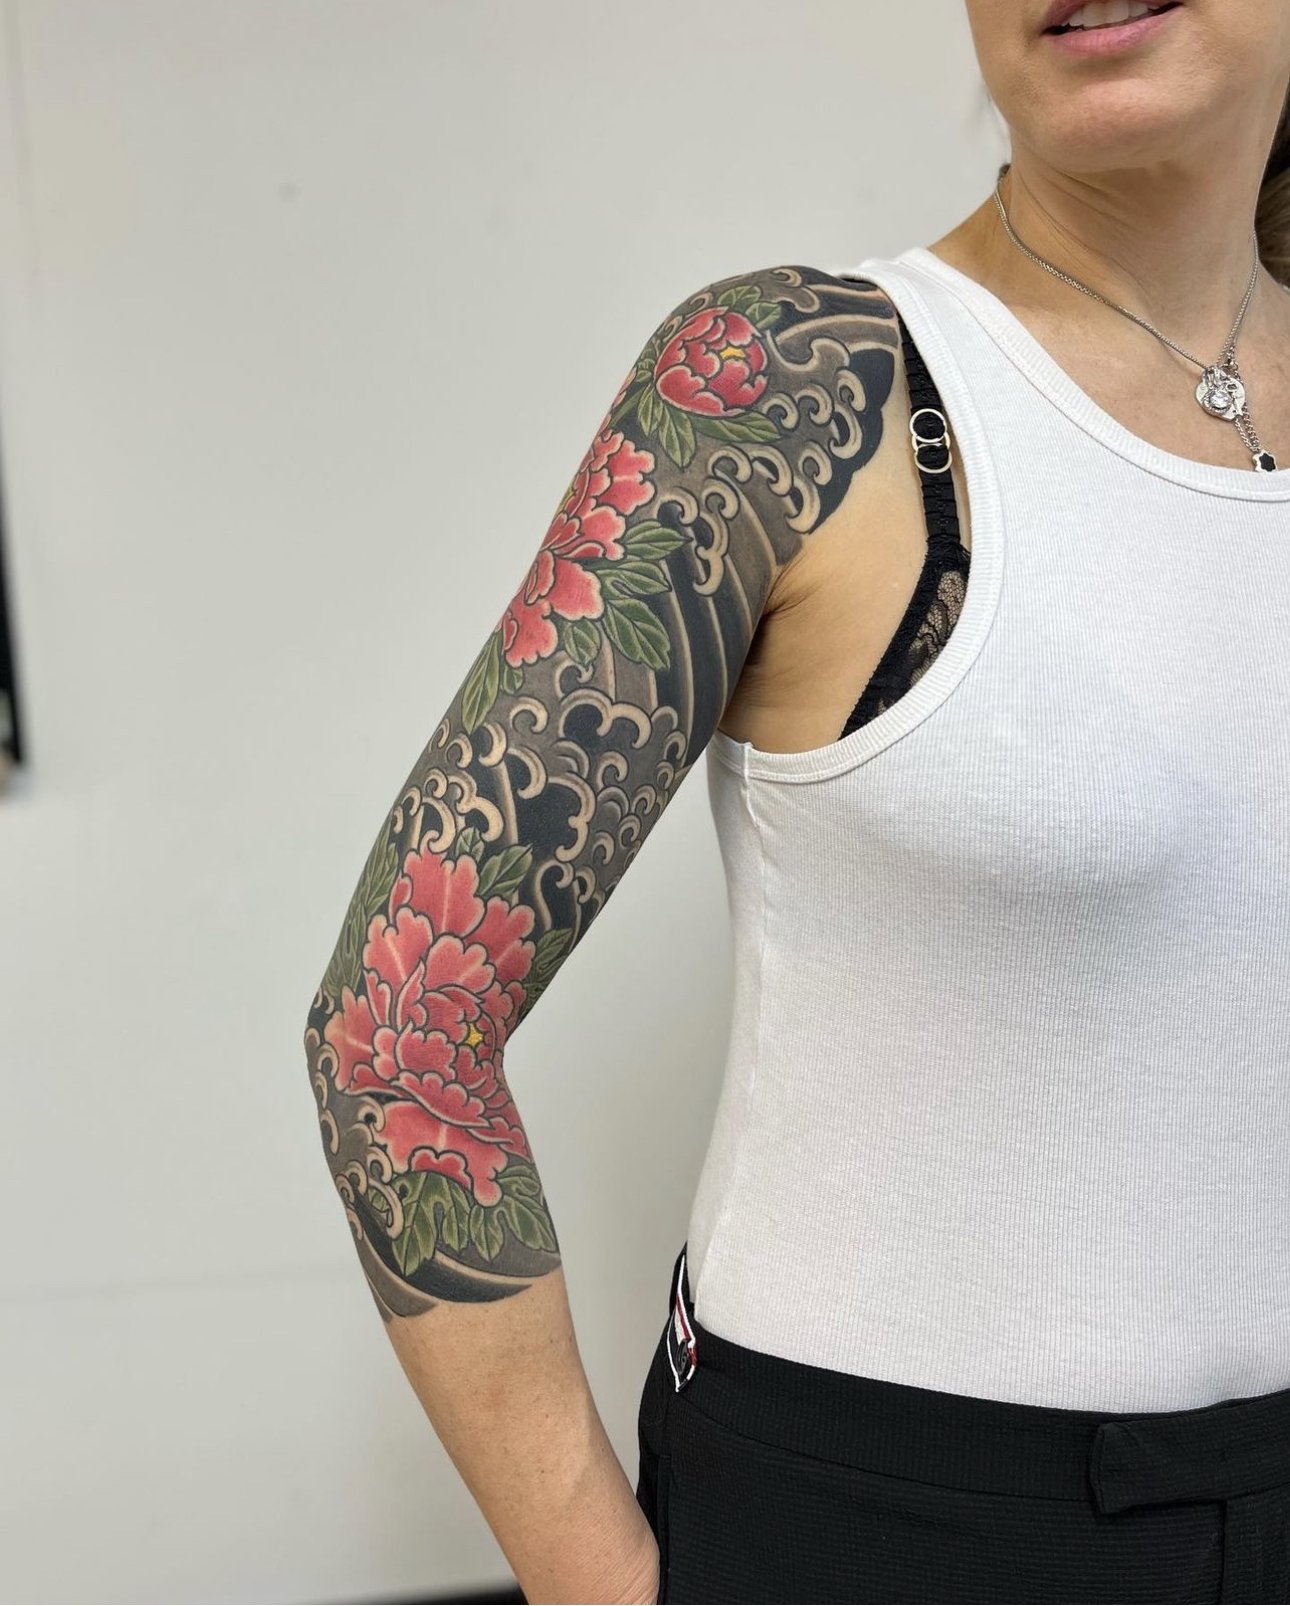 Japanese flower tattoo for females sleeve.jpg